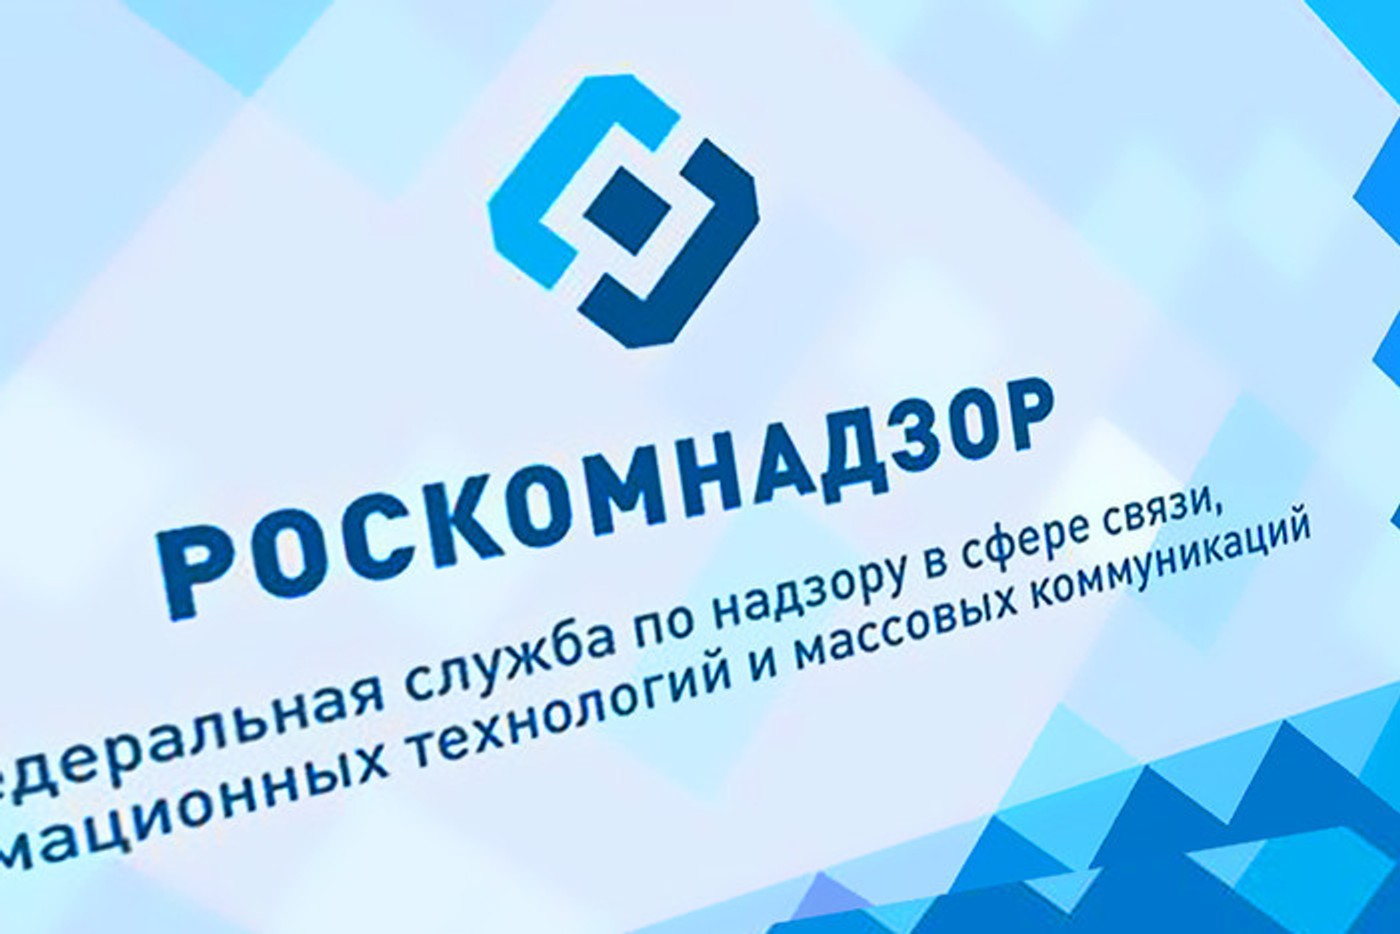 Роскомнадзор подтвердил сообщения о блокировке VPN-сервисов в России. Средства обхода блокировок признали угрозой